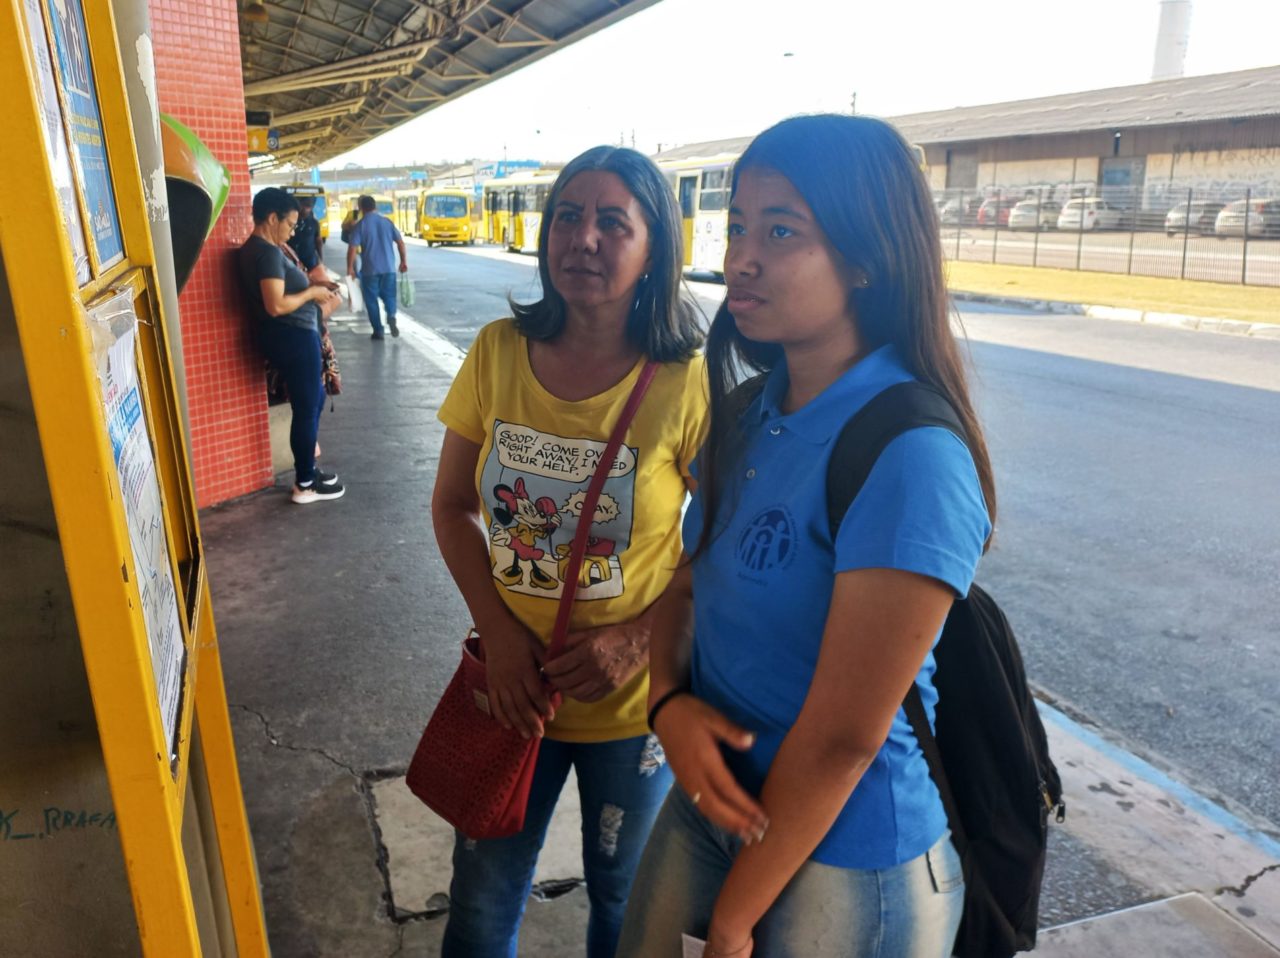 Na imagem estão duas mulheres na plataforma, e elas verificam no painel os horários de ônibus. As duas elogiaram os novos itinerários com expectativa de chegar mais cedo em casa.